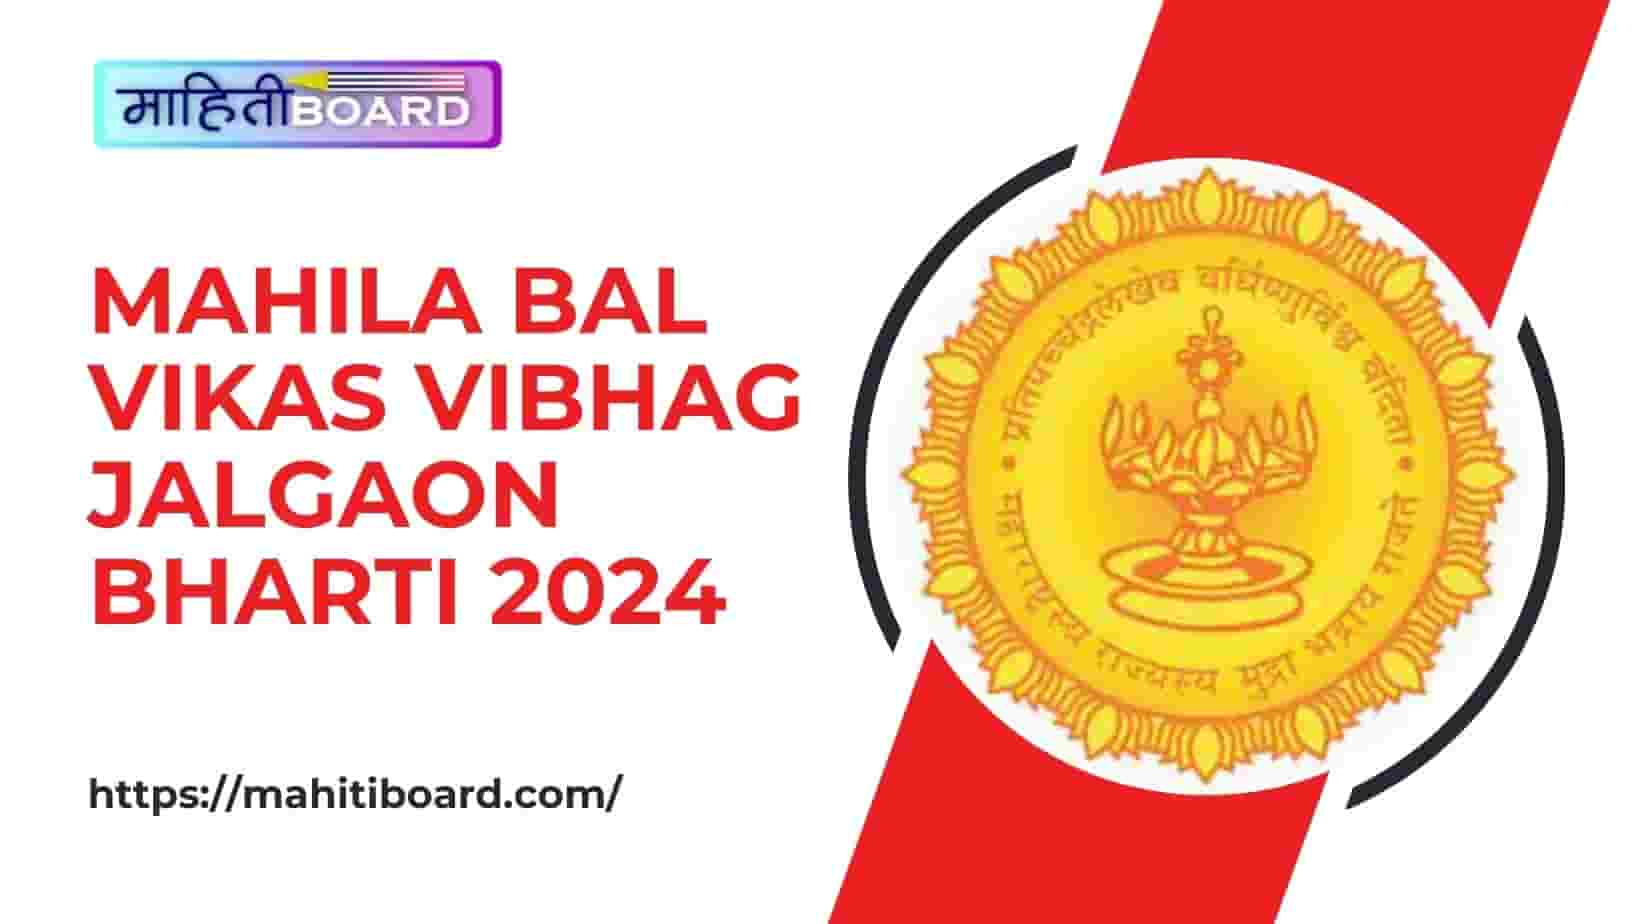 Mahila Bal Vikas Vibhag Jalgaon Bharti 2024